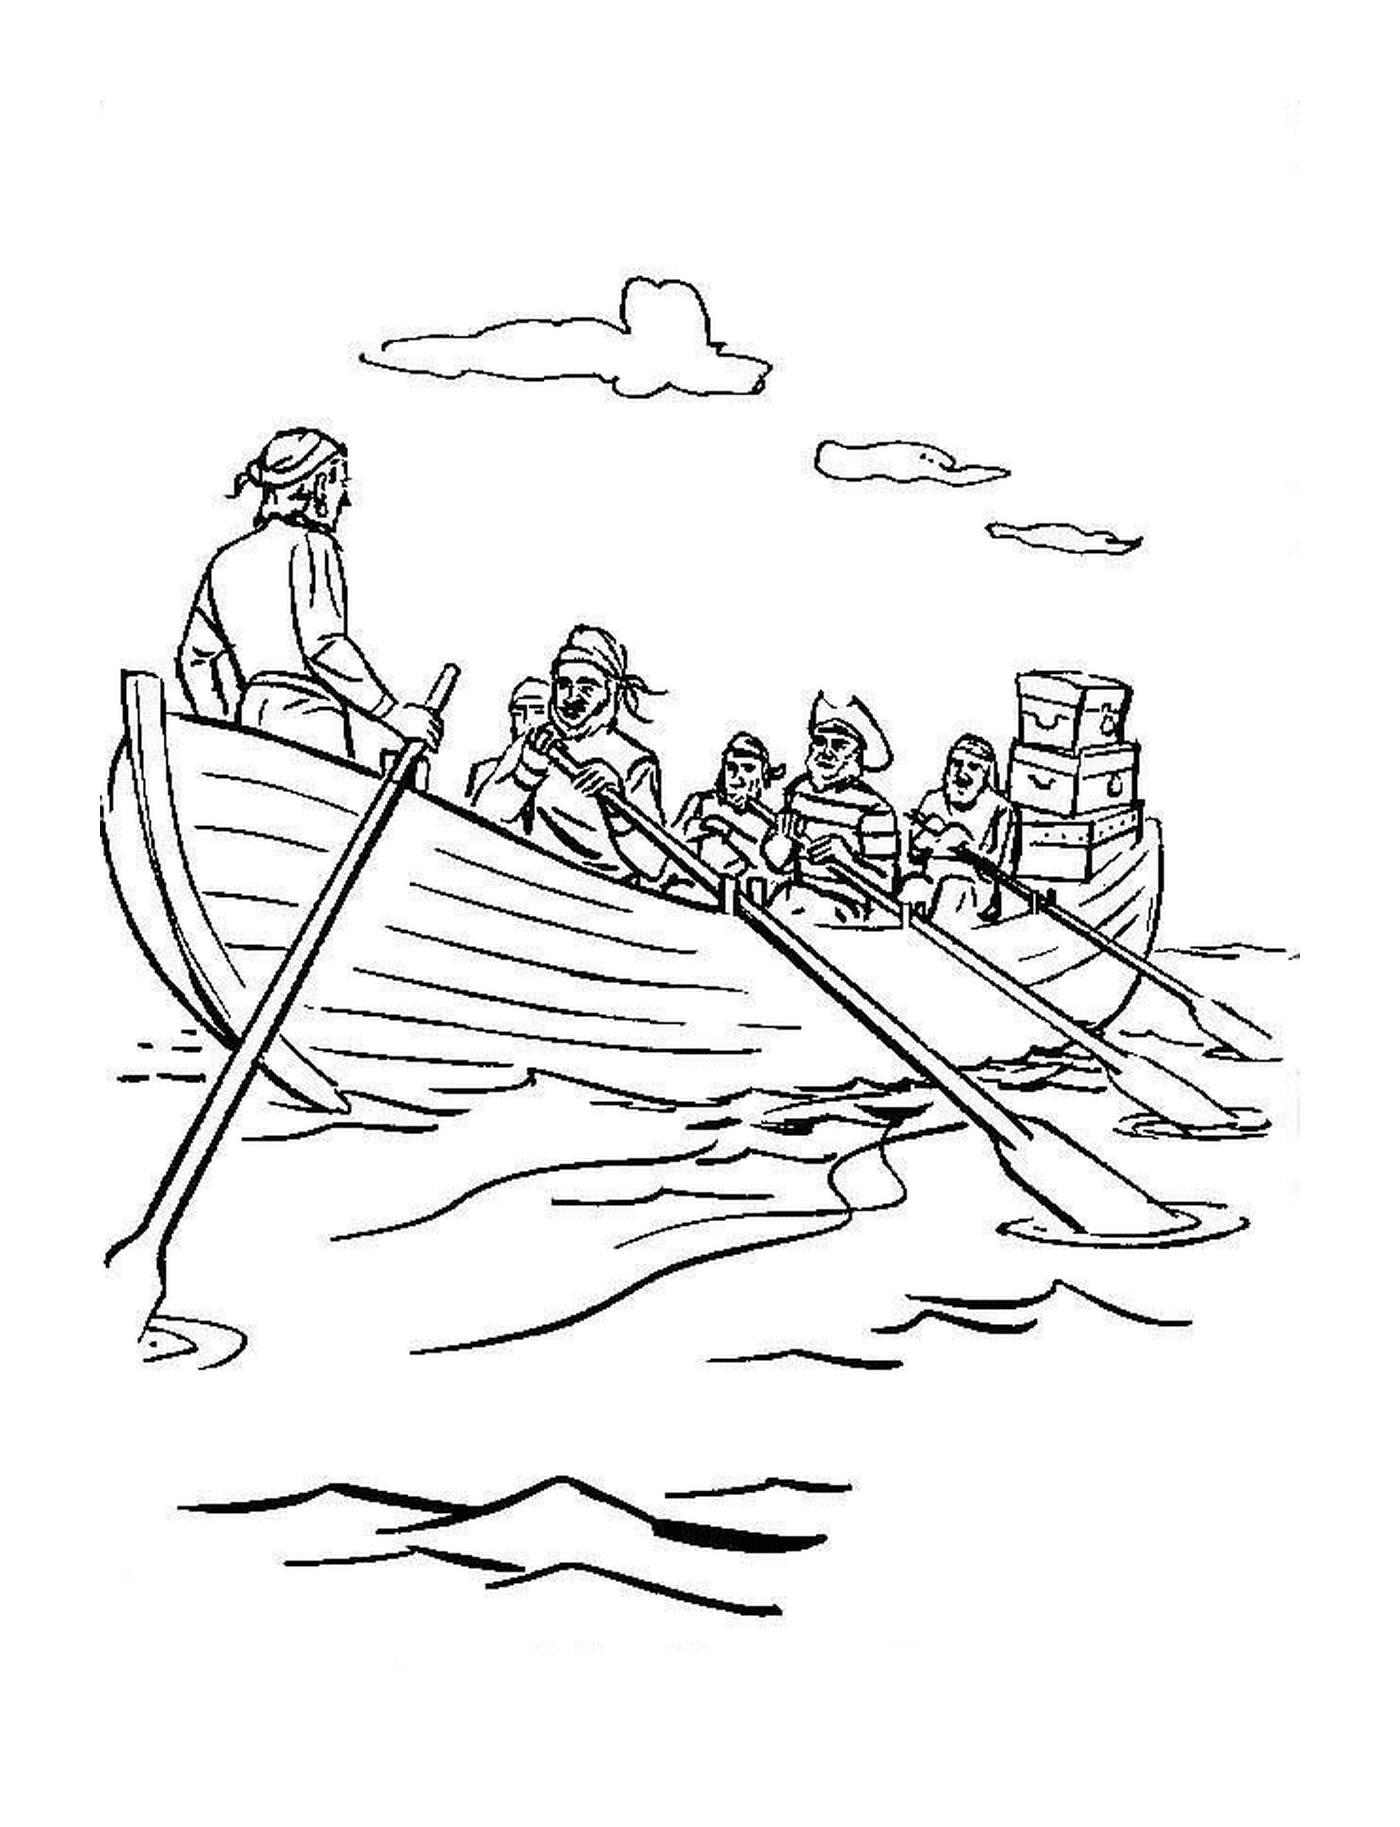   Une chaloupe de pirates naviguant sur l'eau 